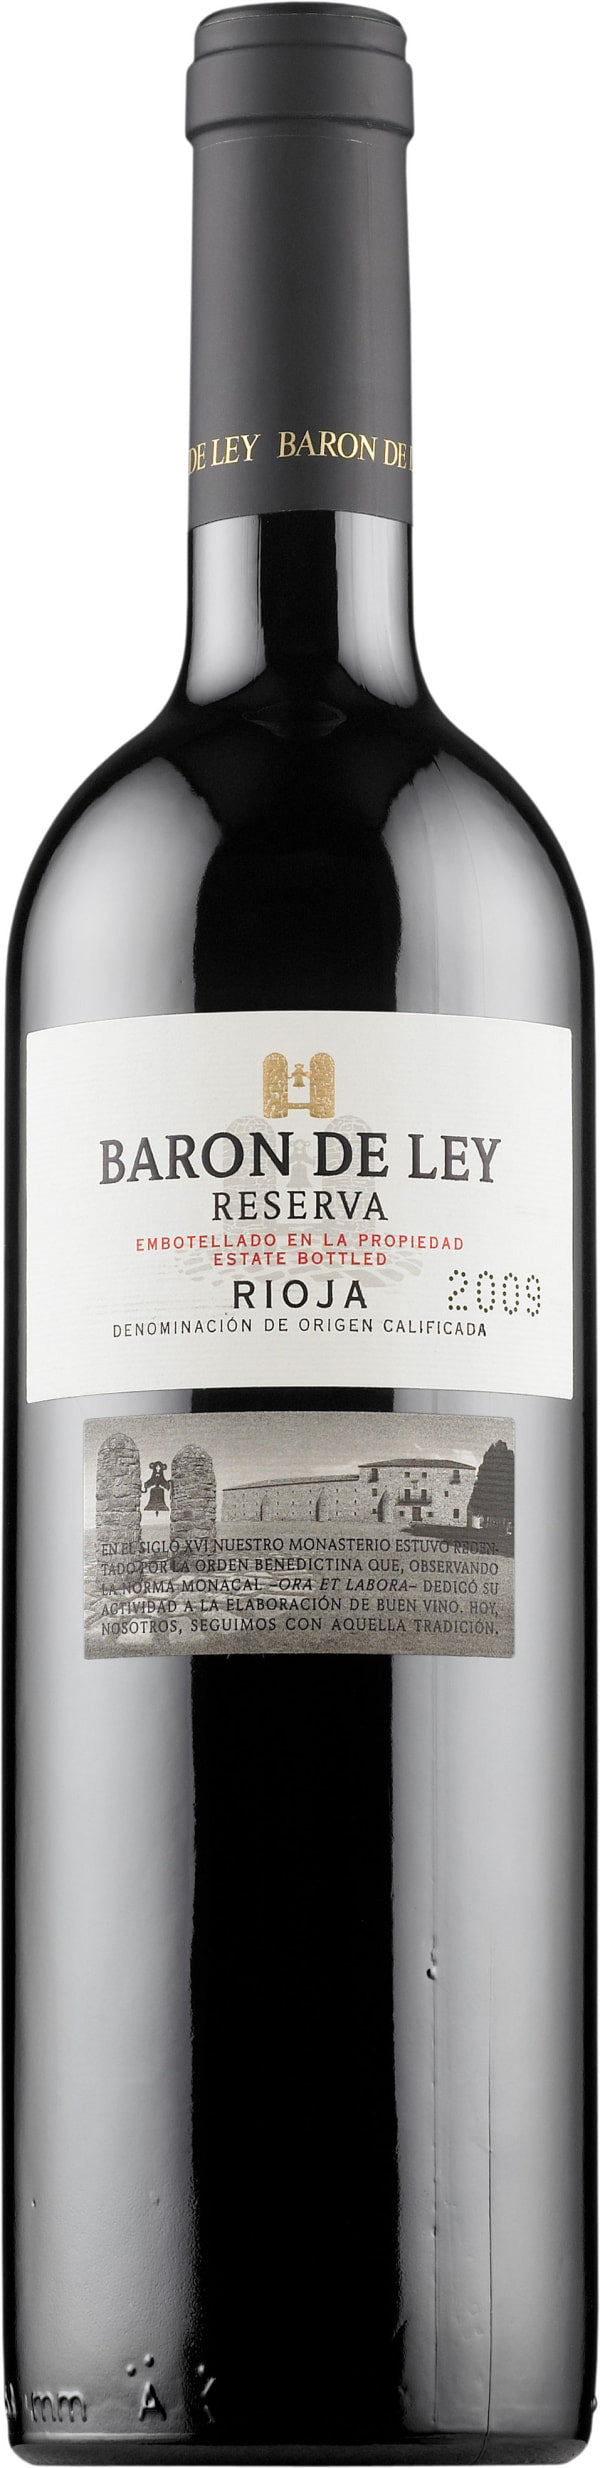 Baron de Ley Rioja Reserva 2016